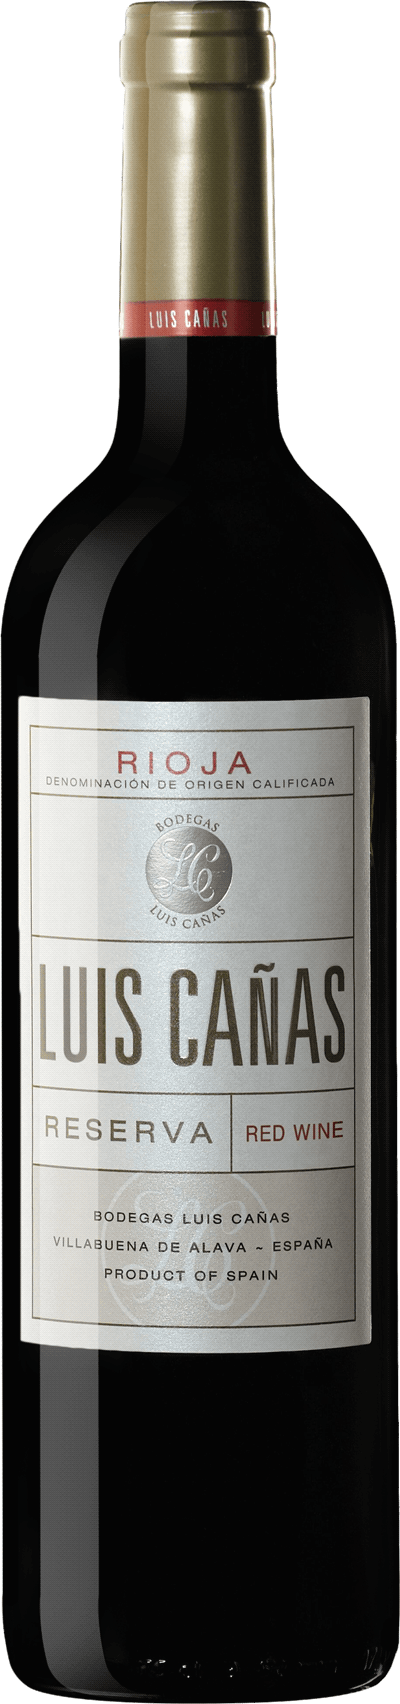 Luis Cañas Rioja Reserva